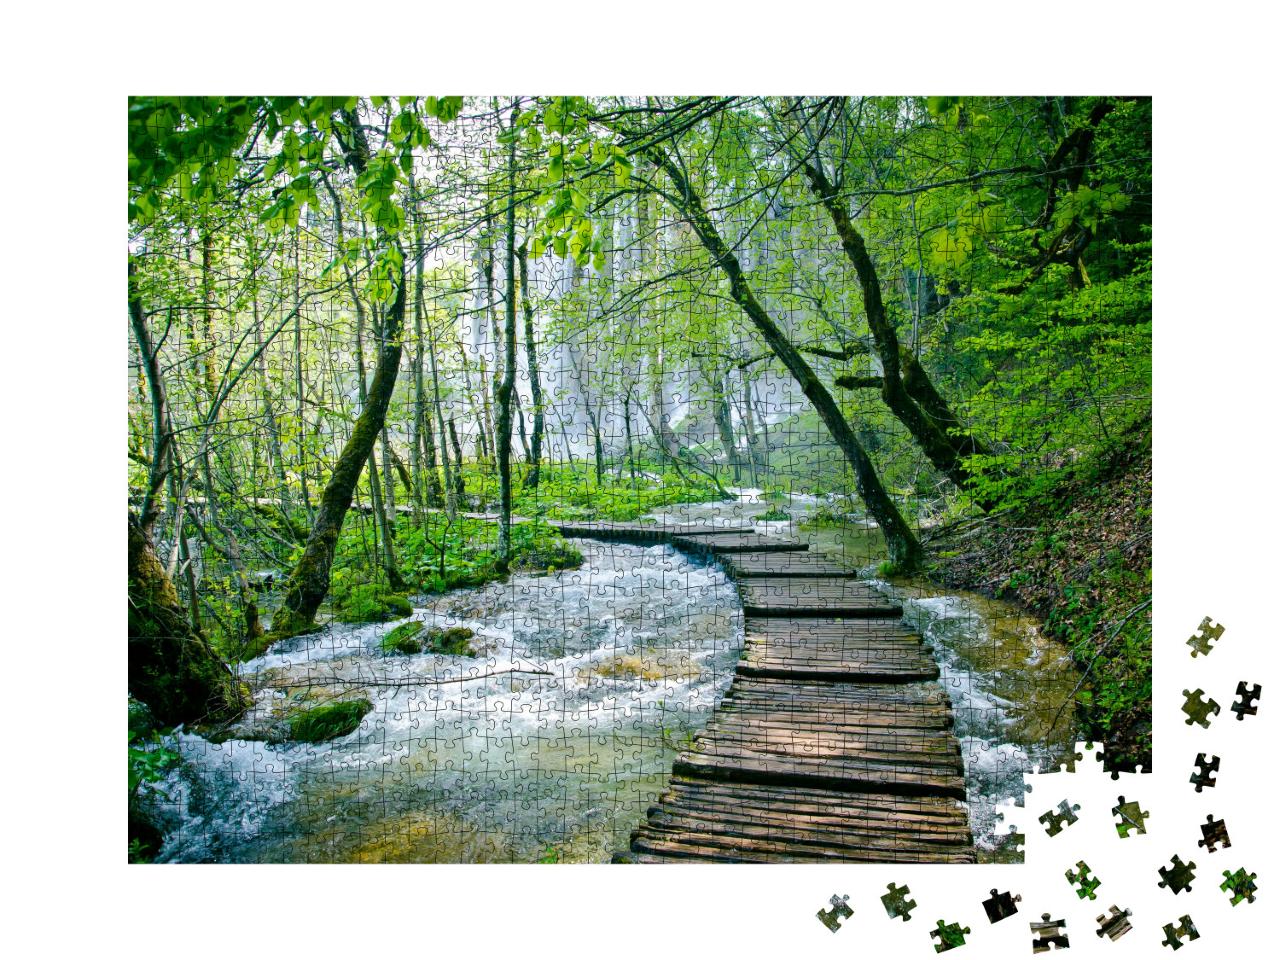 Puzzle 1000 Teile „Holzpfad und Wasserfall im Plitvice-Nationalpark, Kroatien“